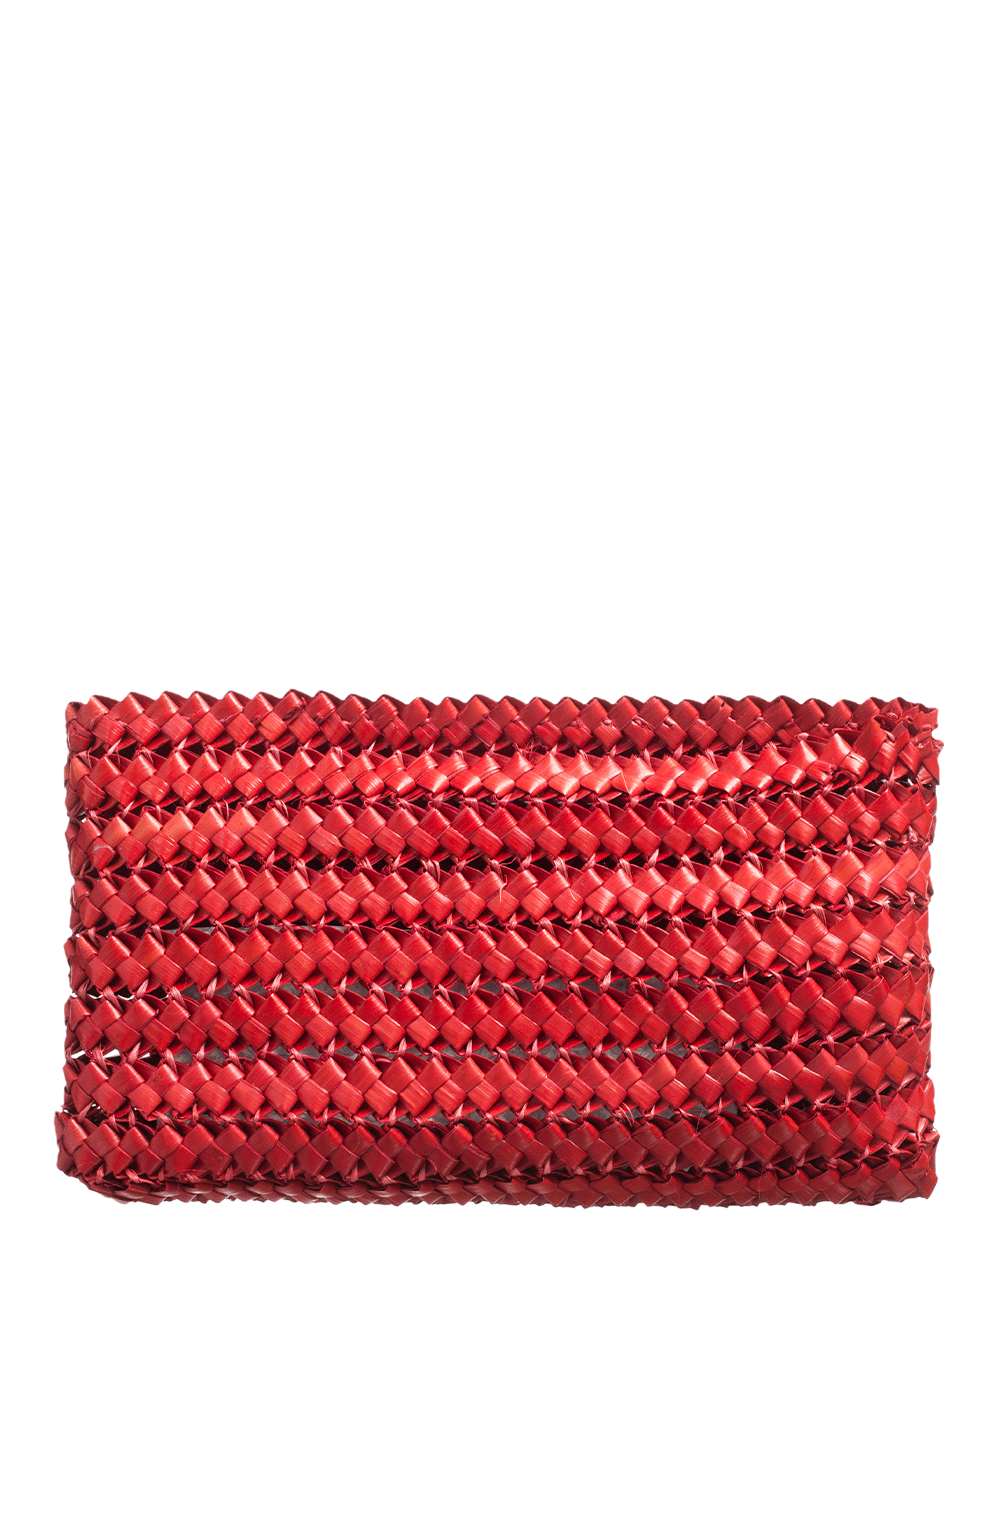 Red Artisanal Bag - Natura